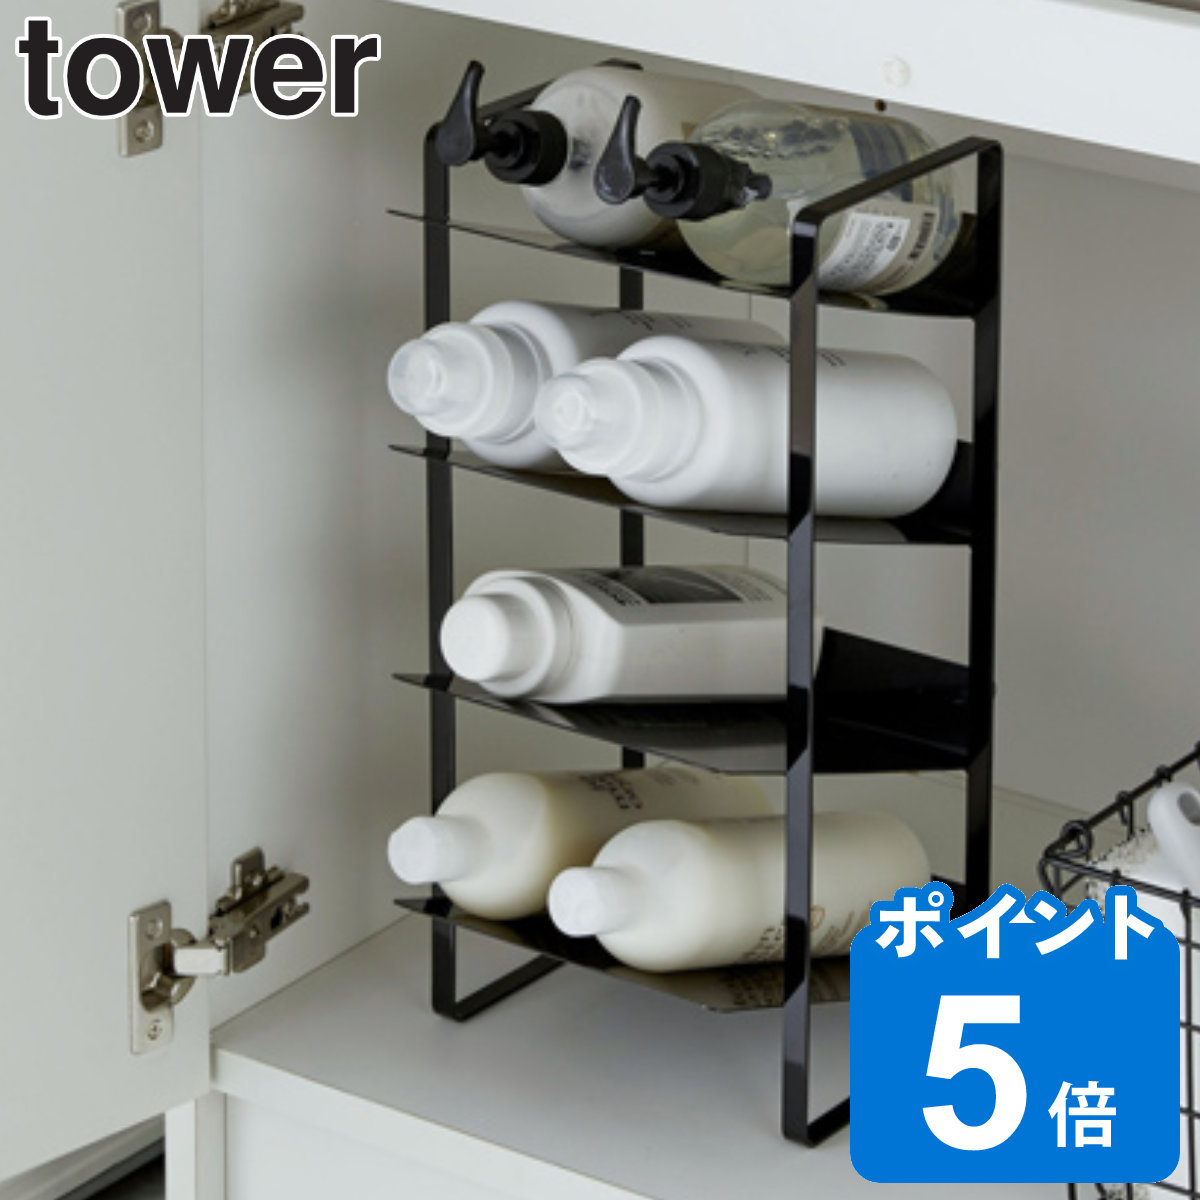 山崎実業 tower シンク下ボトルストッカー 4段 タワー